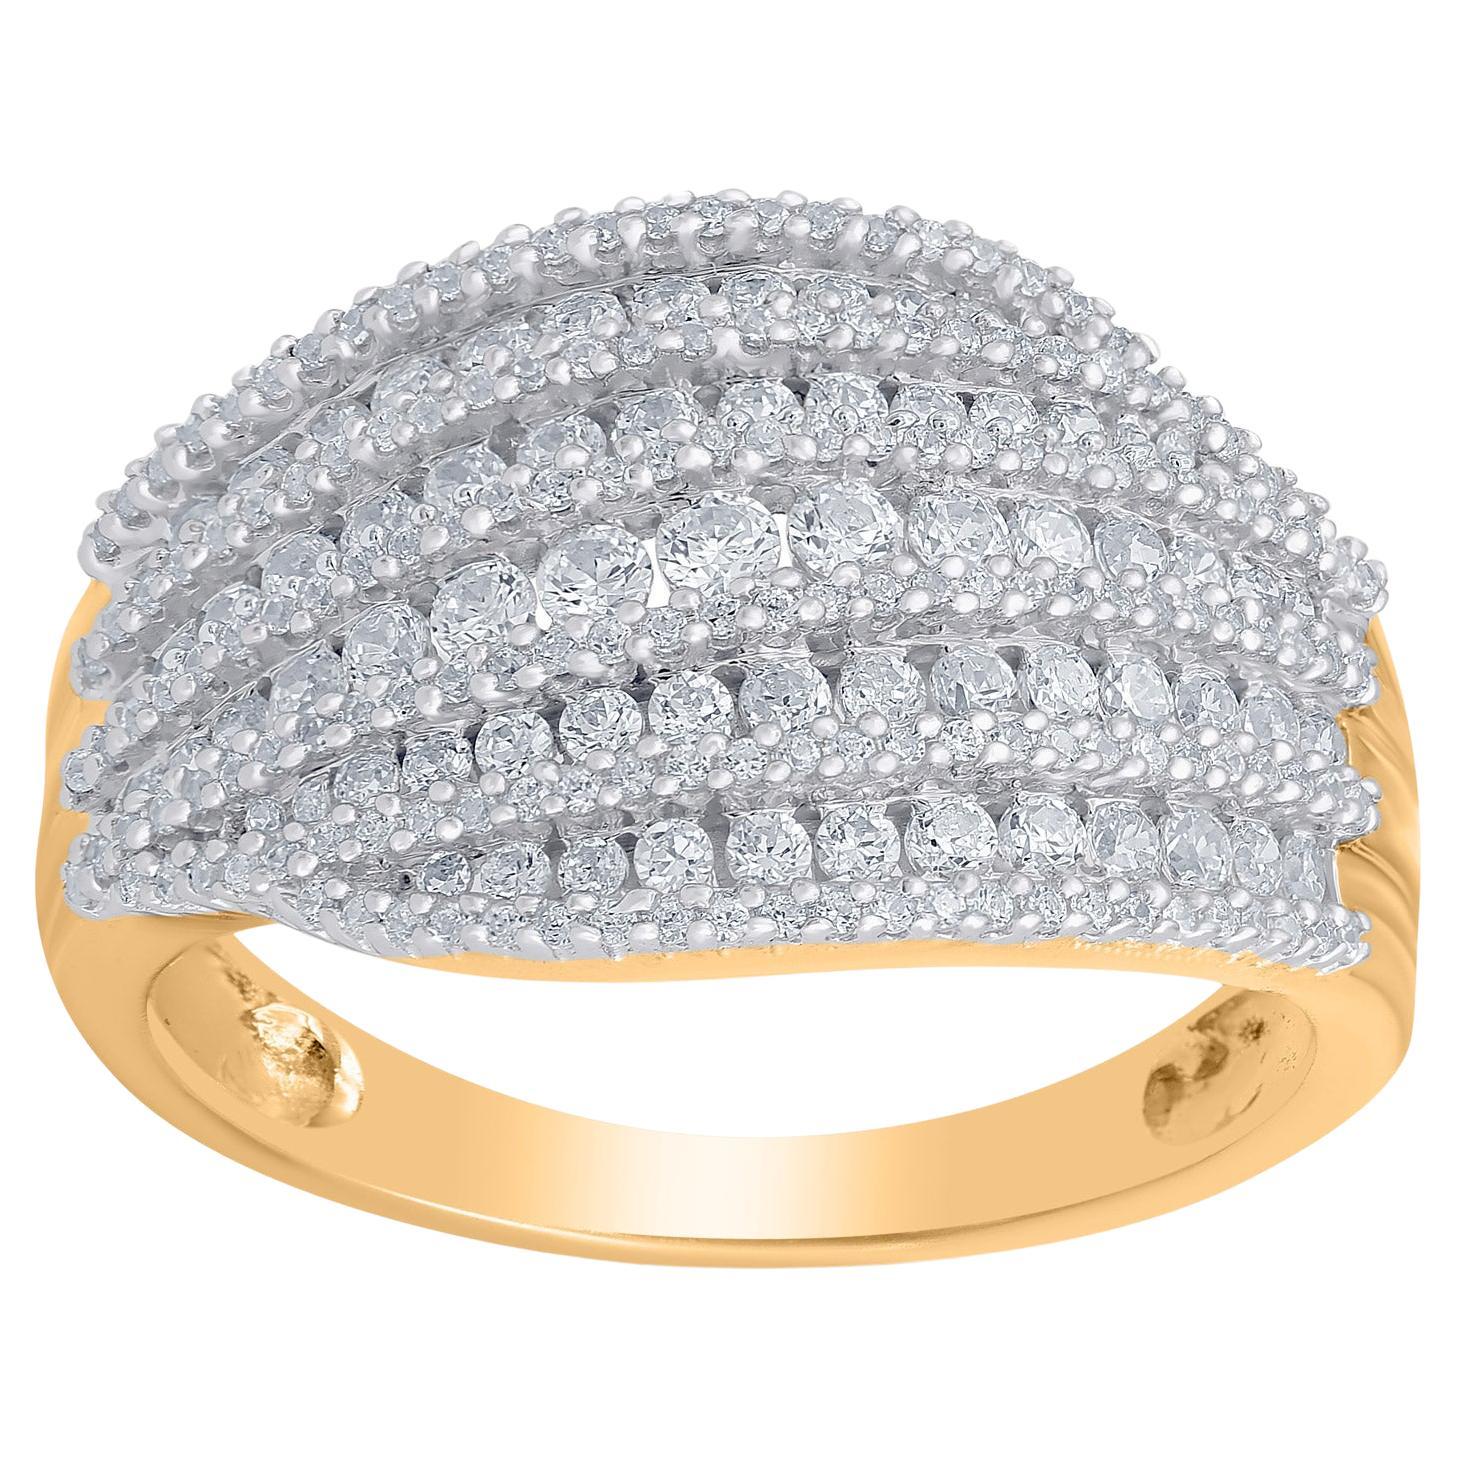 TJD 1.0 Carat Natural Round Diamond 14 Karat Yellow Gold Wedding Band Ring